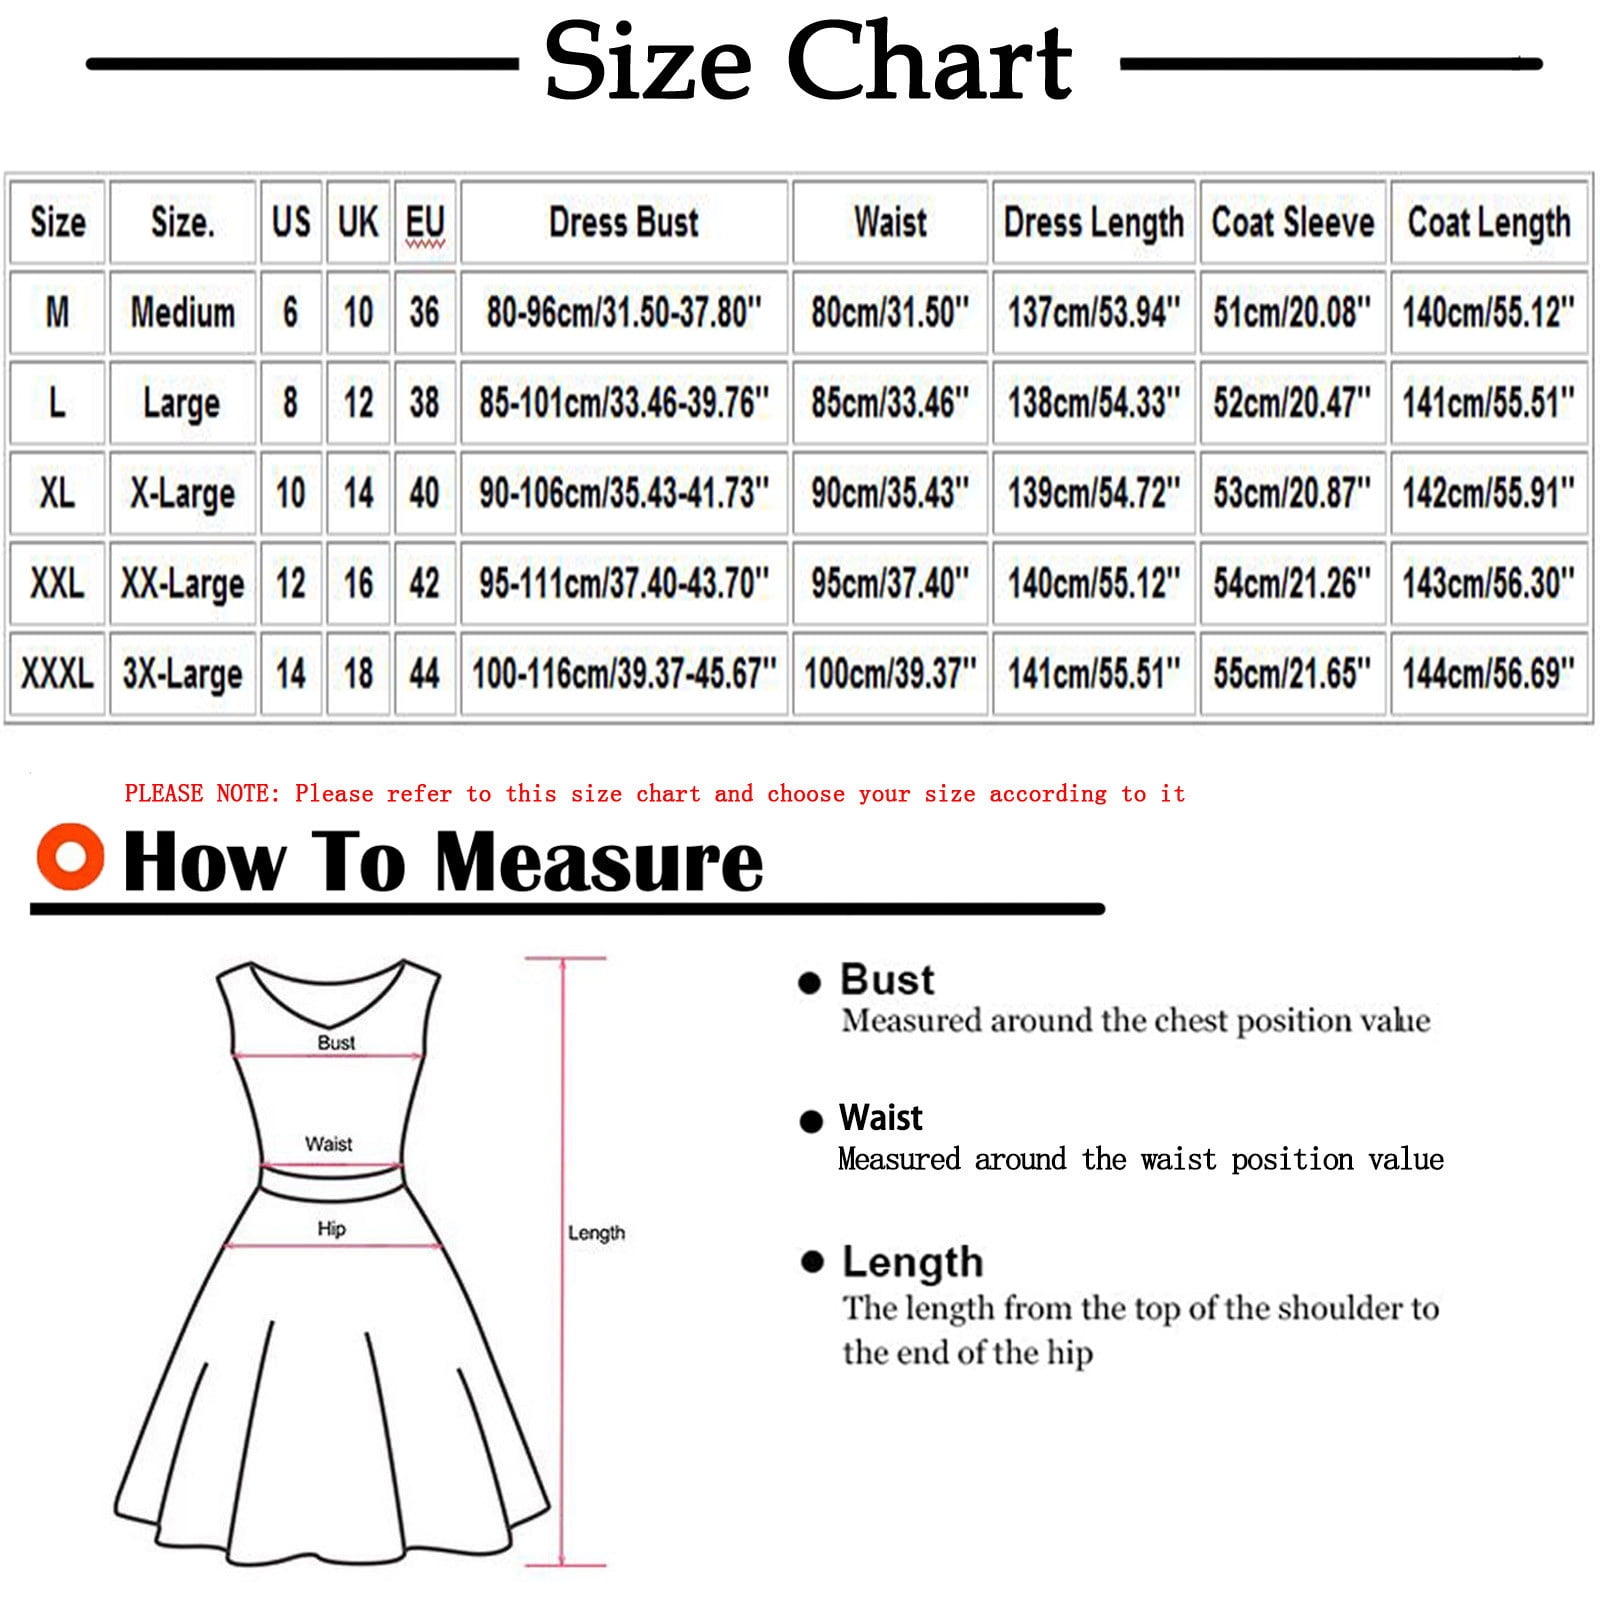 womens dress size chart